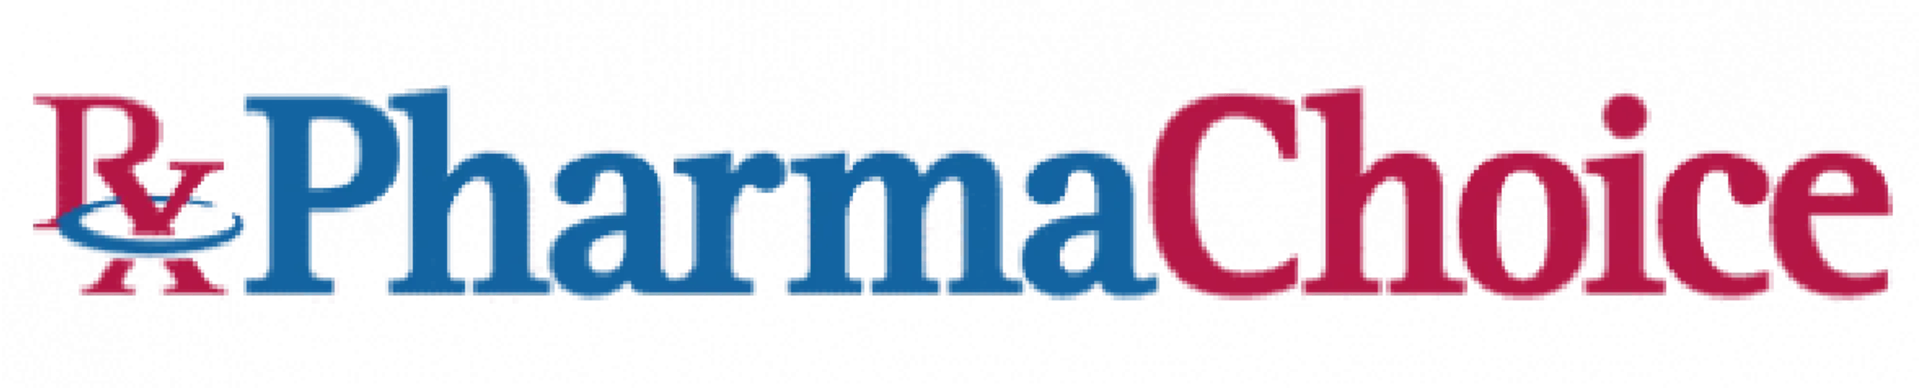 PHARMACHOICE logo